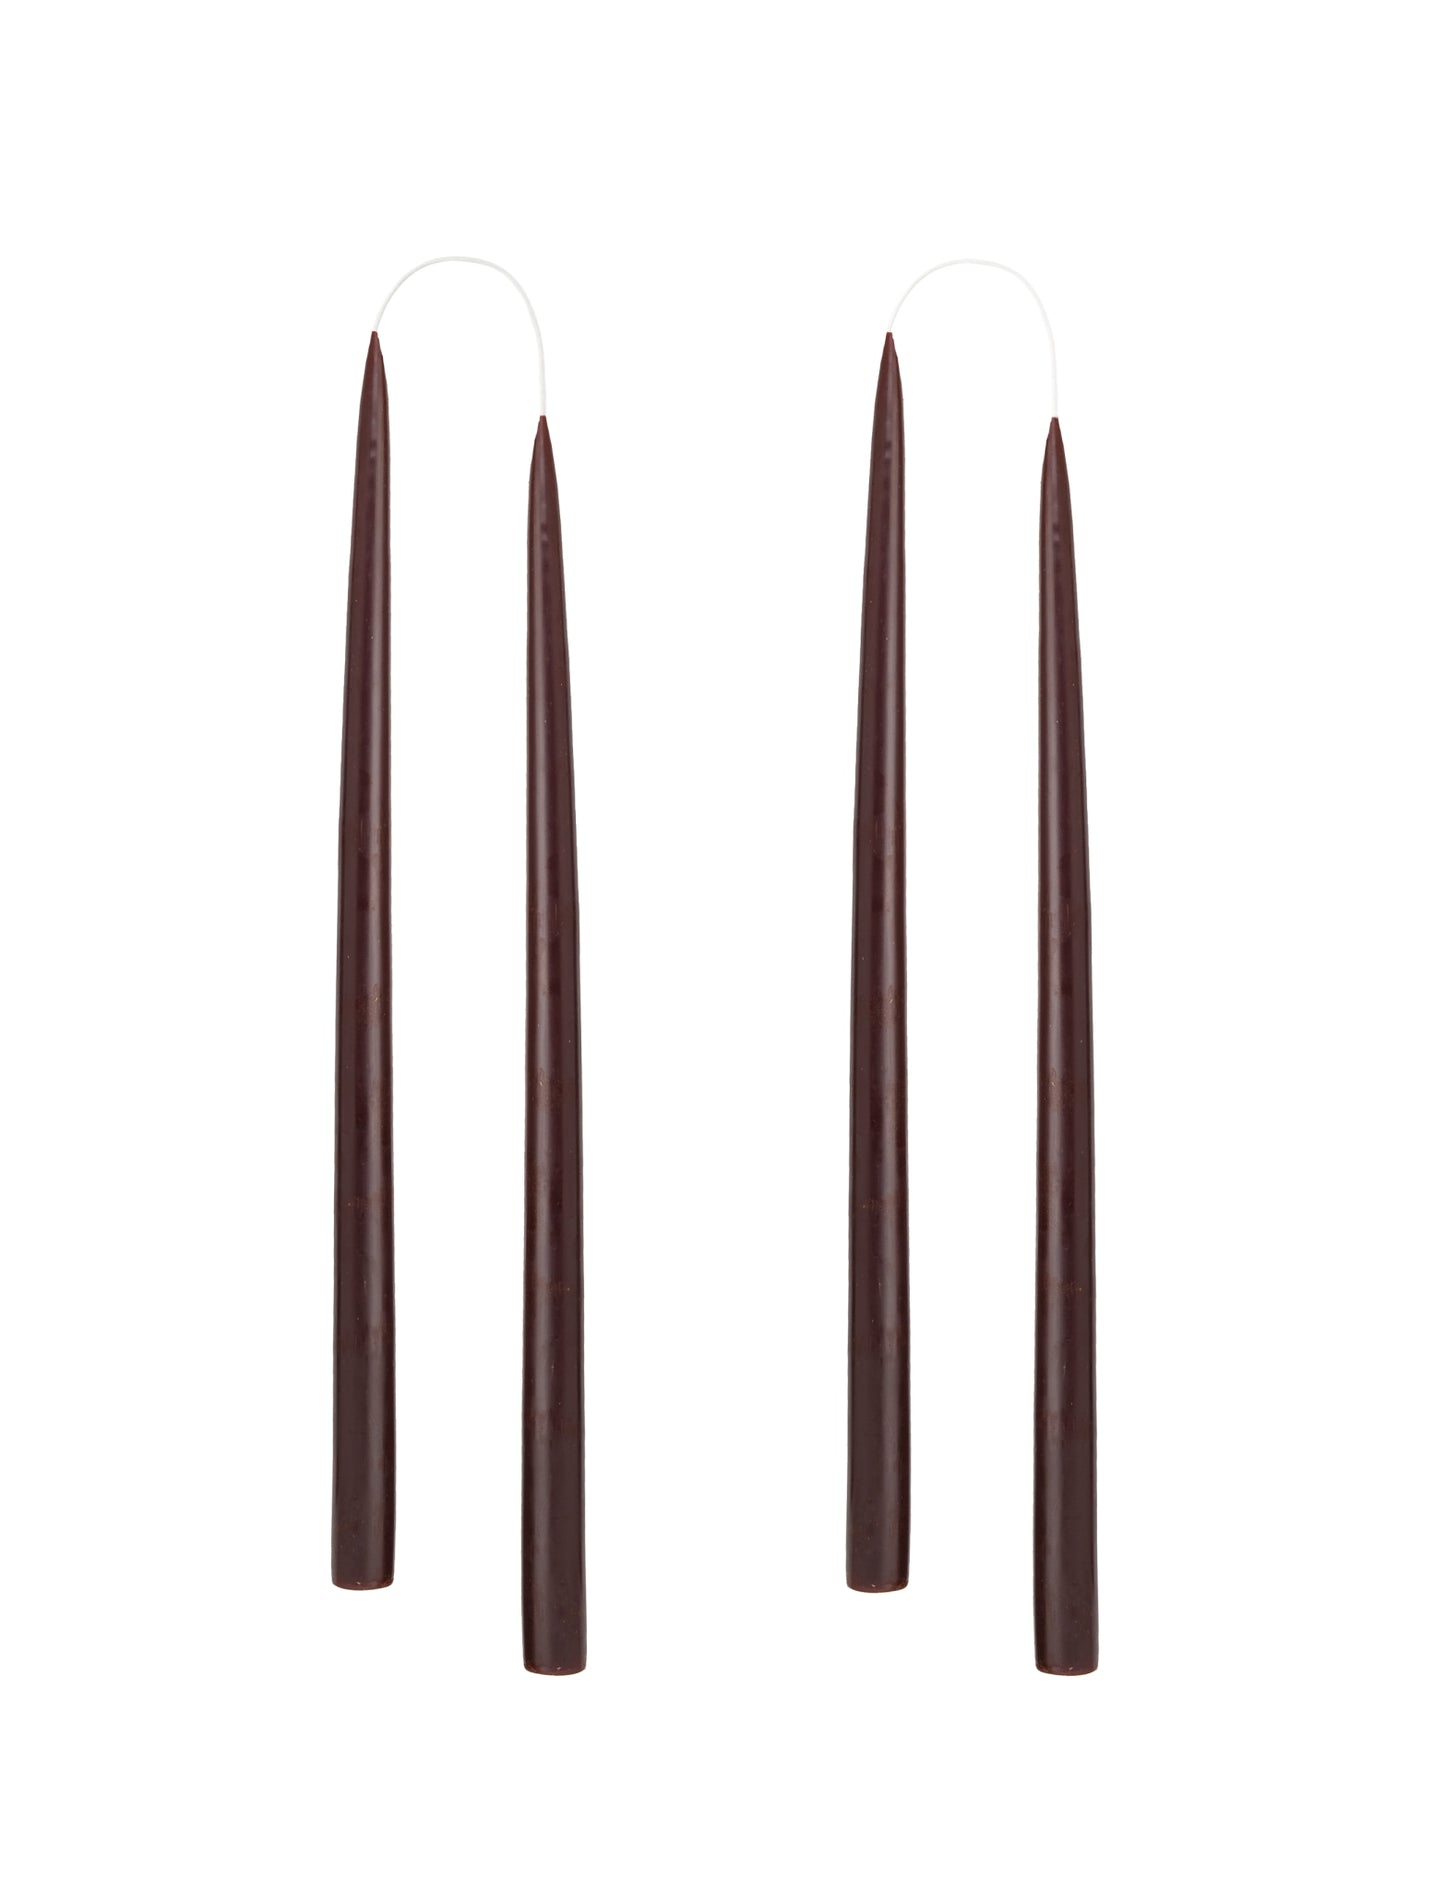 Von Hand getauchte, gefärbte Kerze, im 4er-Pack – 2,2 x 35 cm – Schokoladenbraun #60